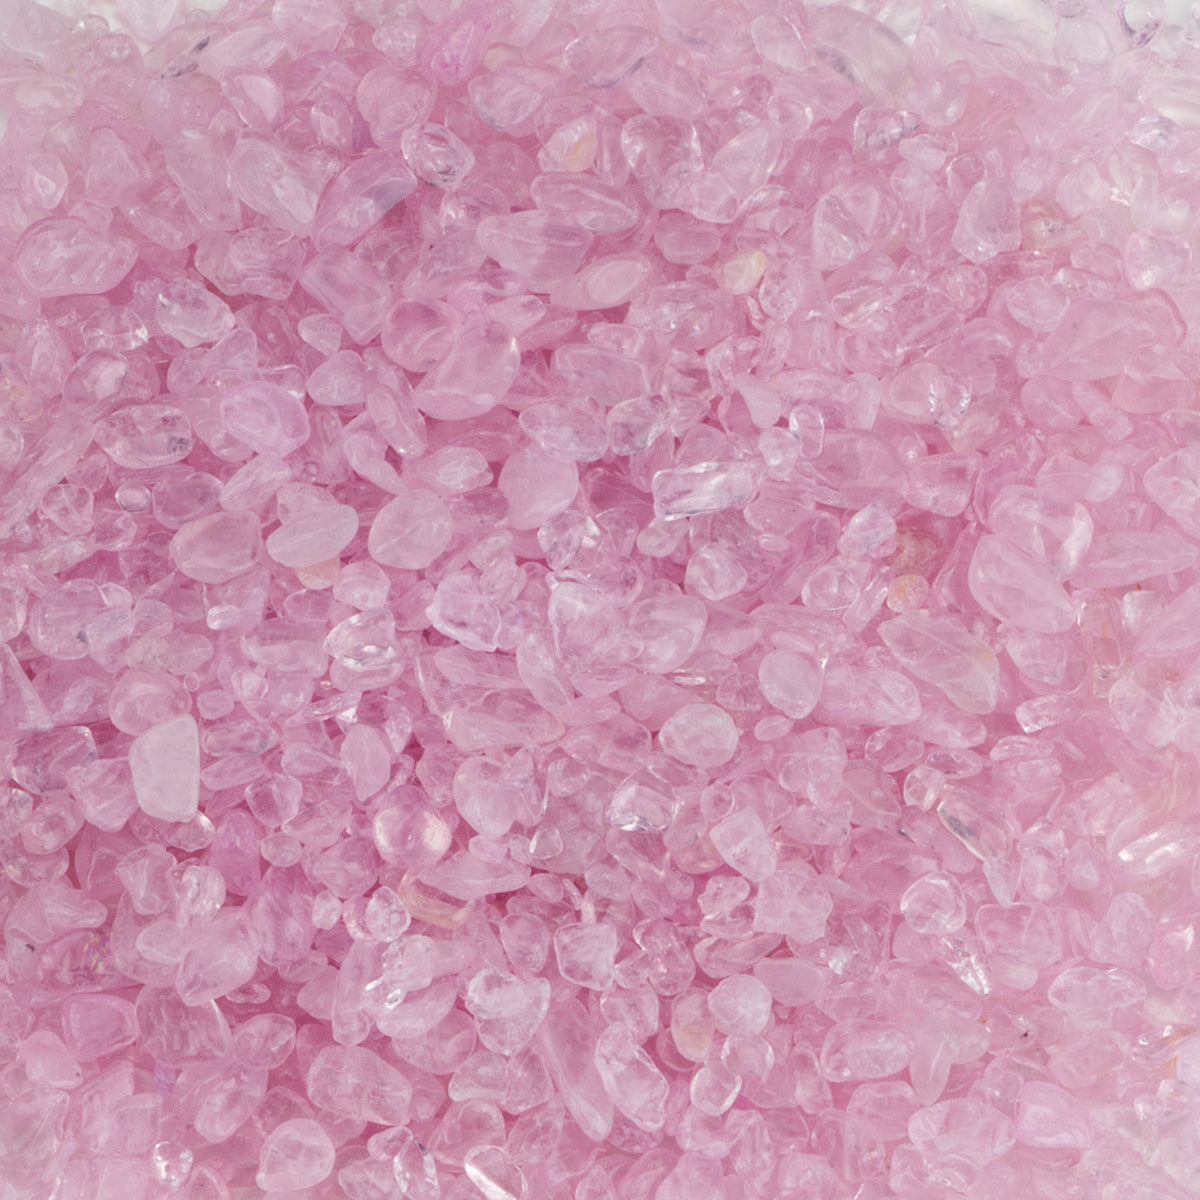 Polished Gemstone Chips | 1/2 Pound (Rose Quartz)